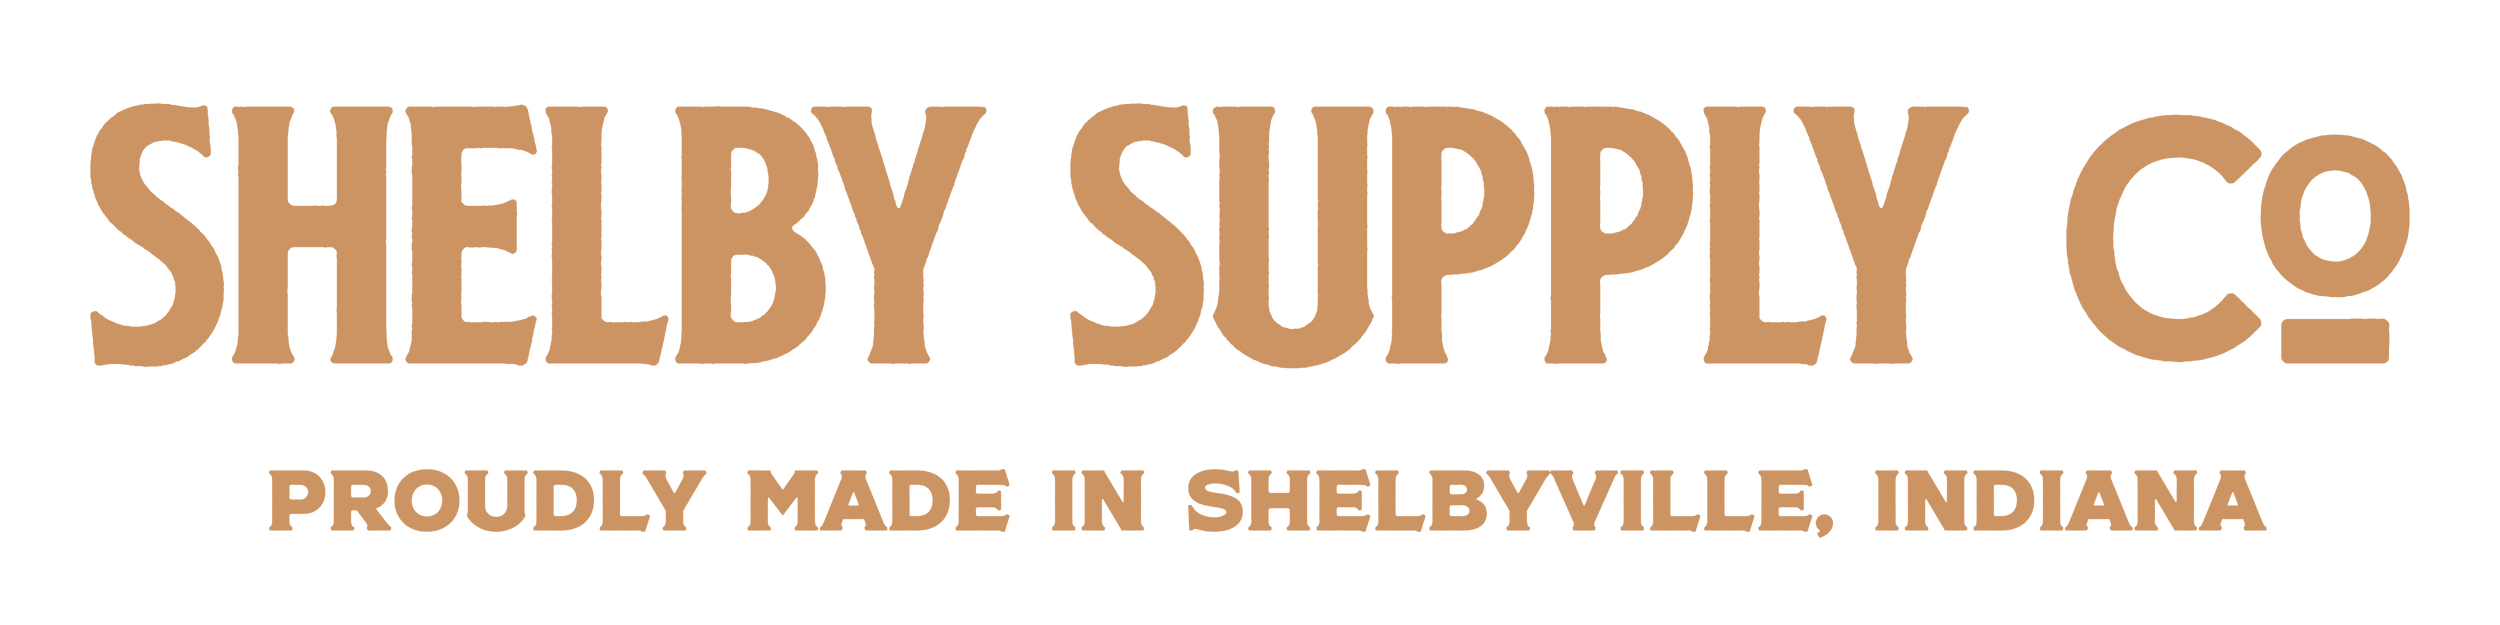 Shelby Supply Company